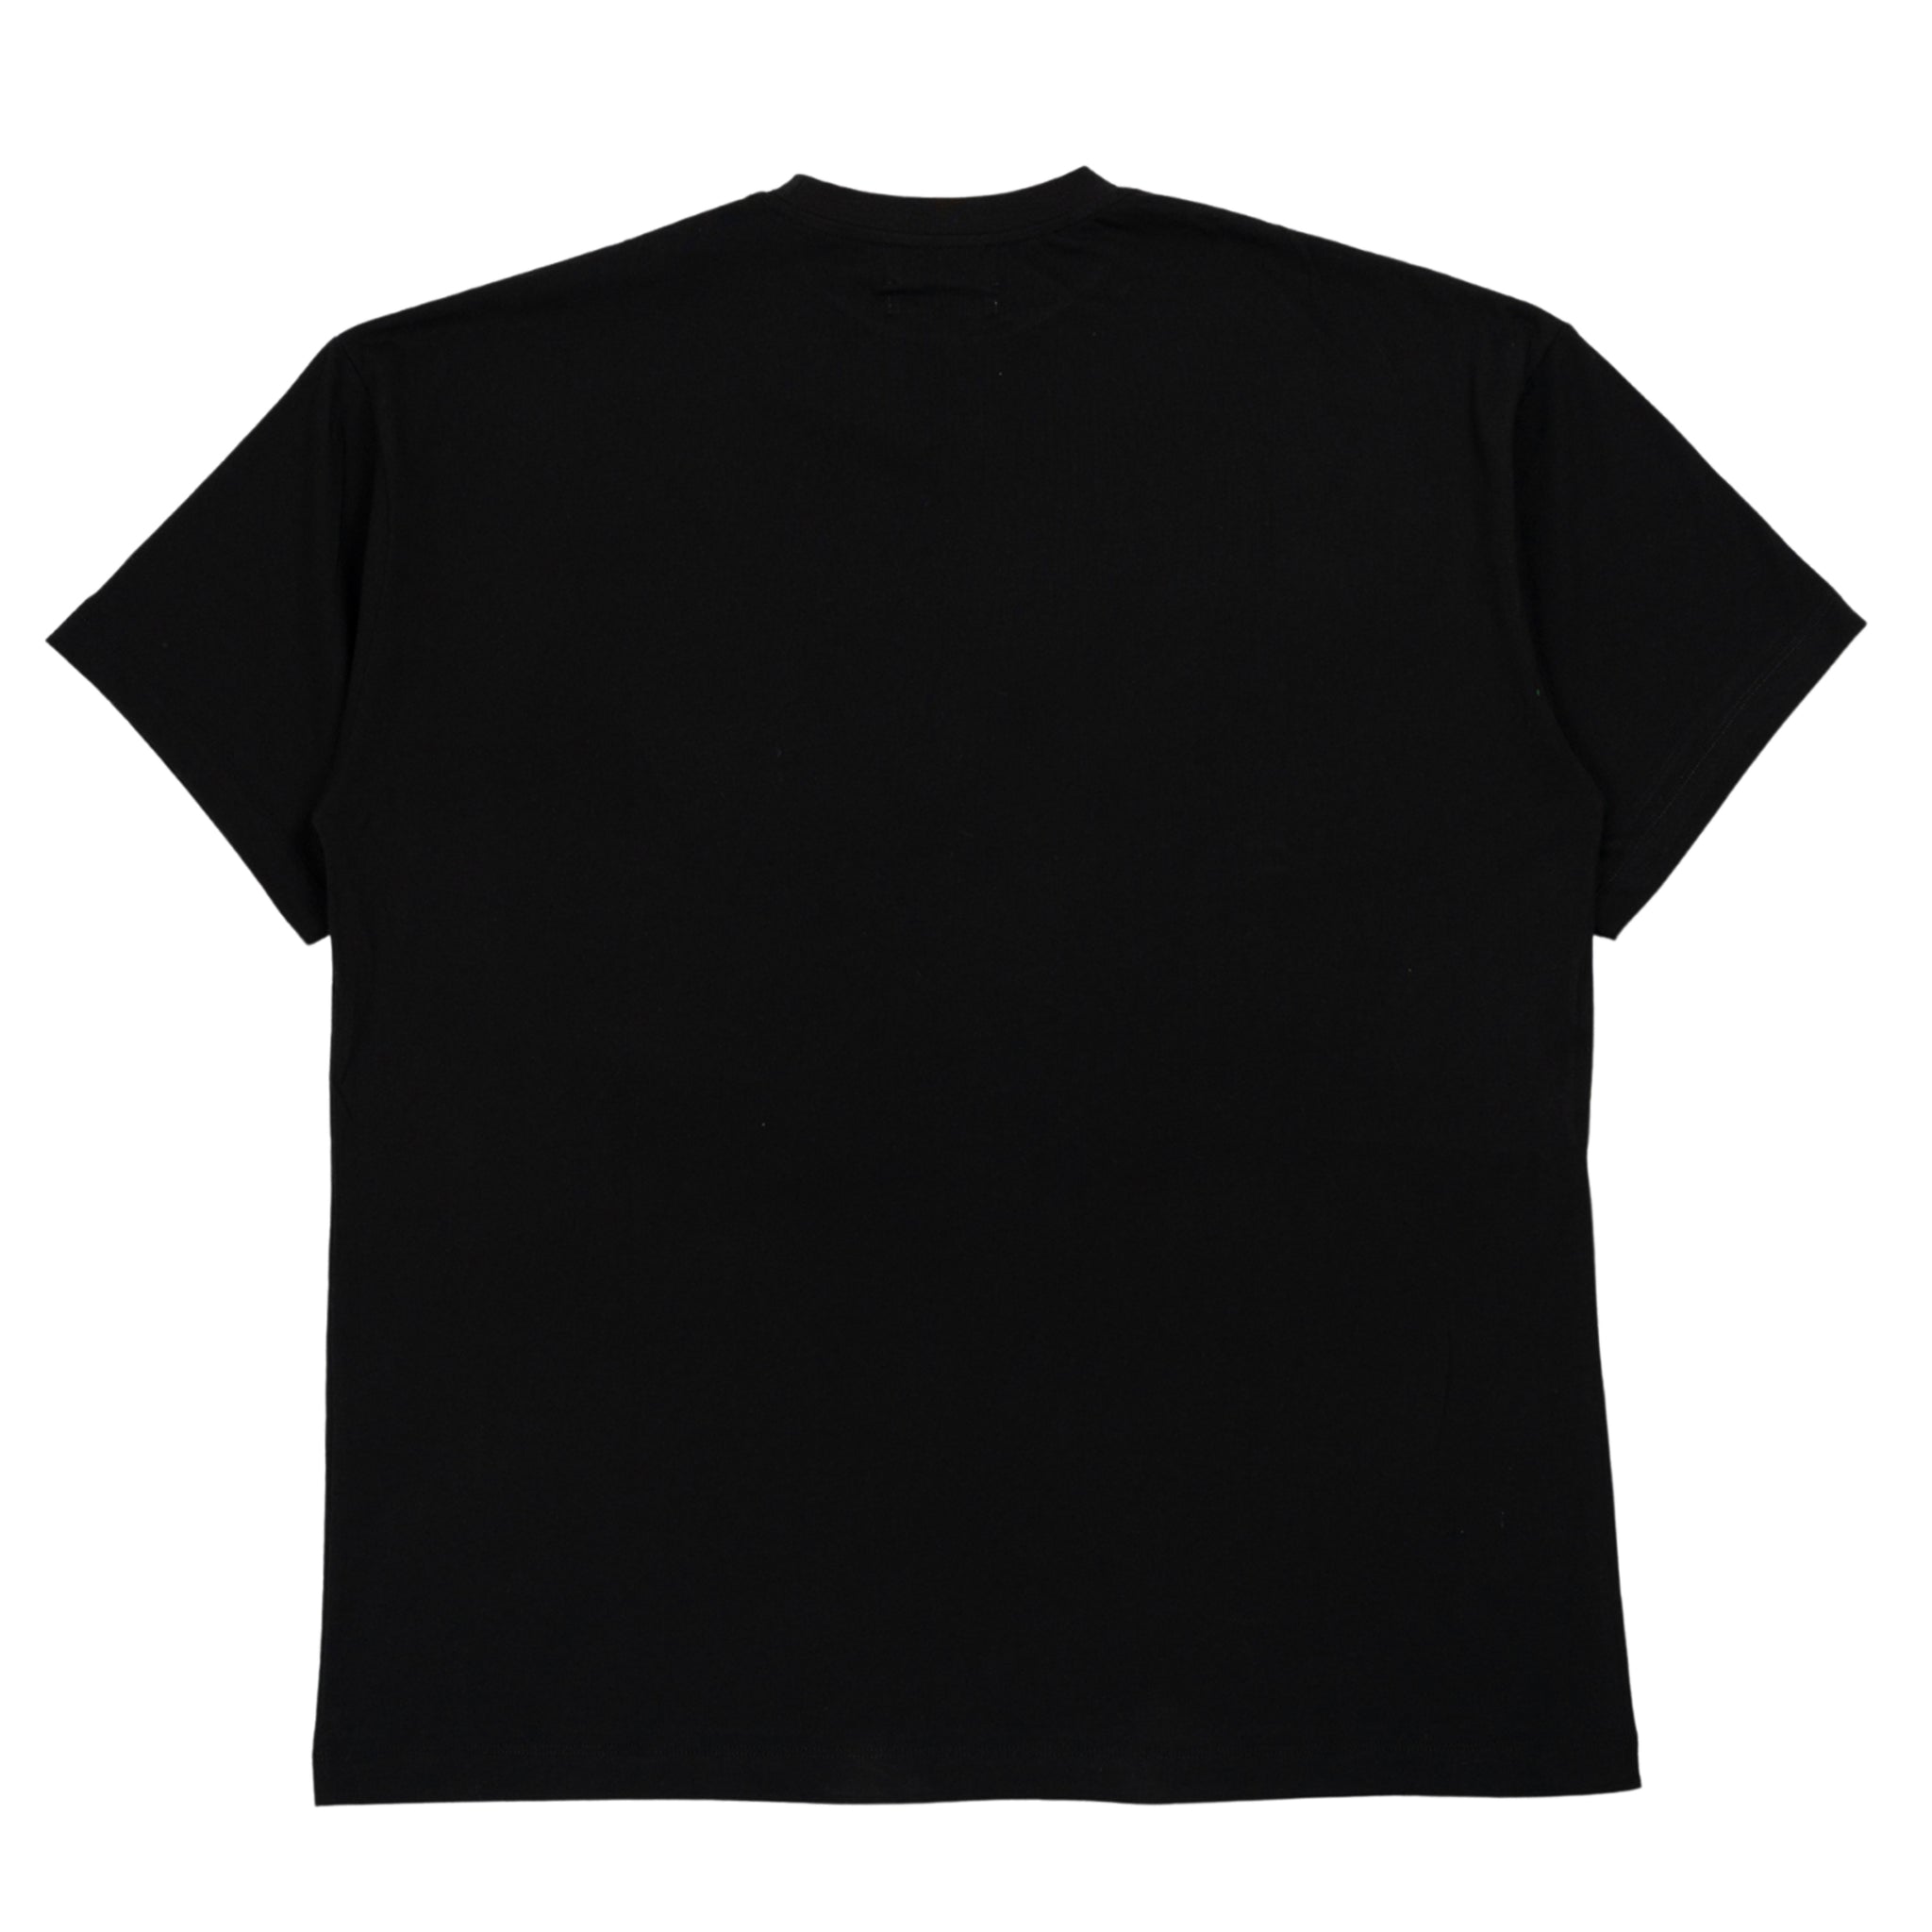 Foglia t-shirt stampata in nero